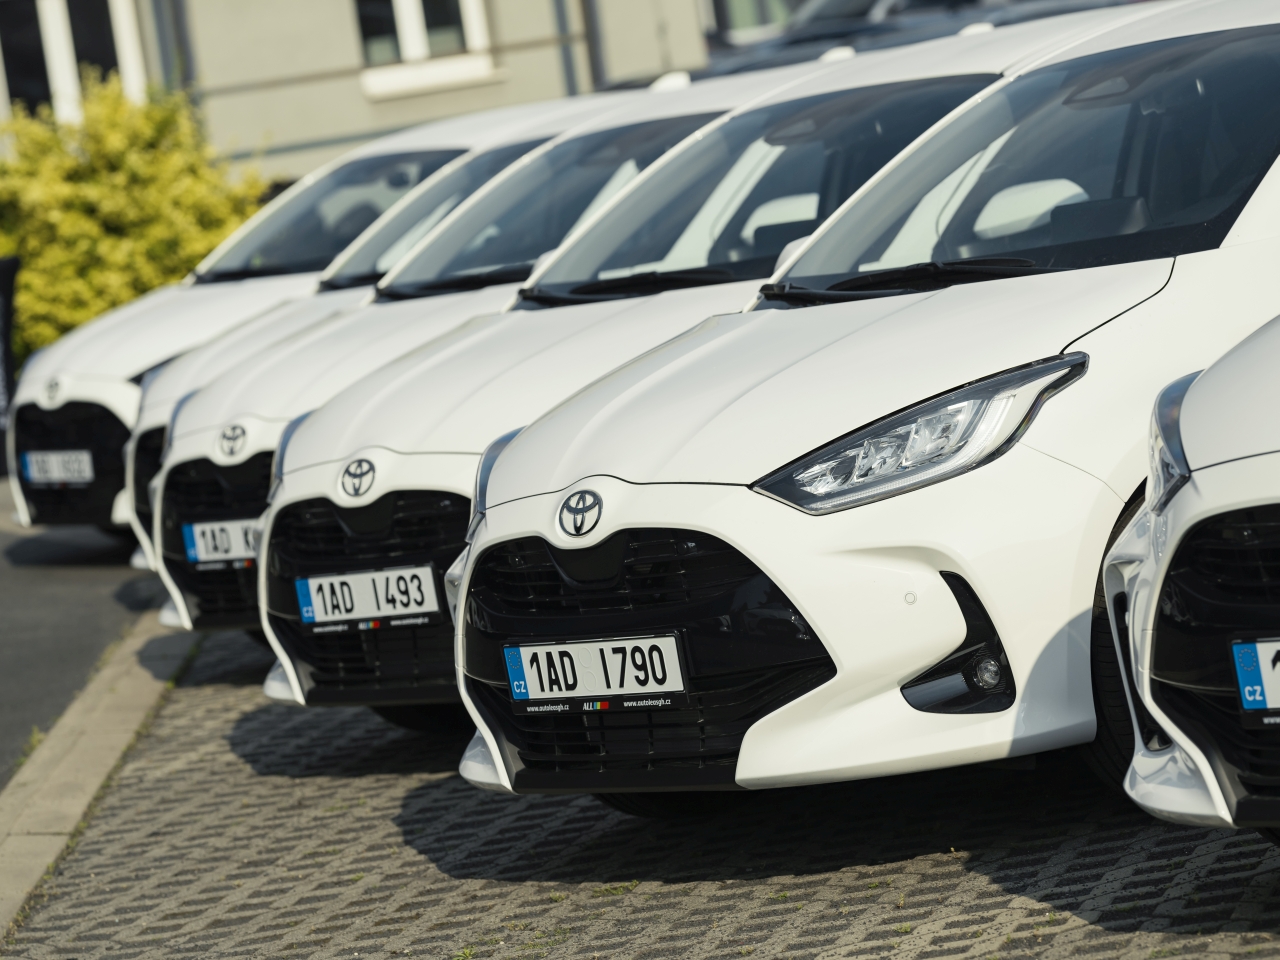 Toyota dodala 35 hybridních Yarisů české firmě ACCOM